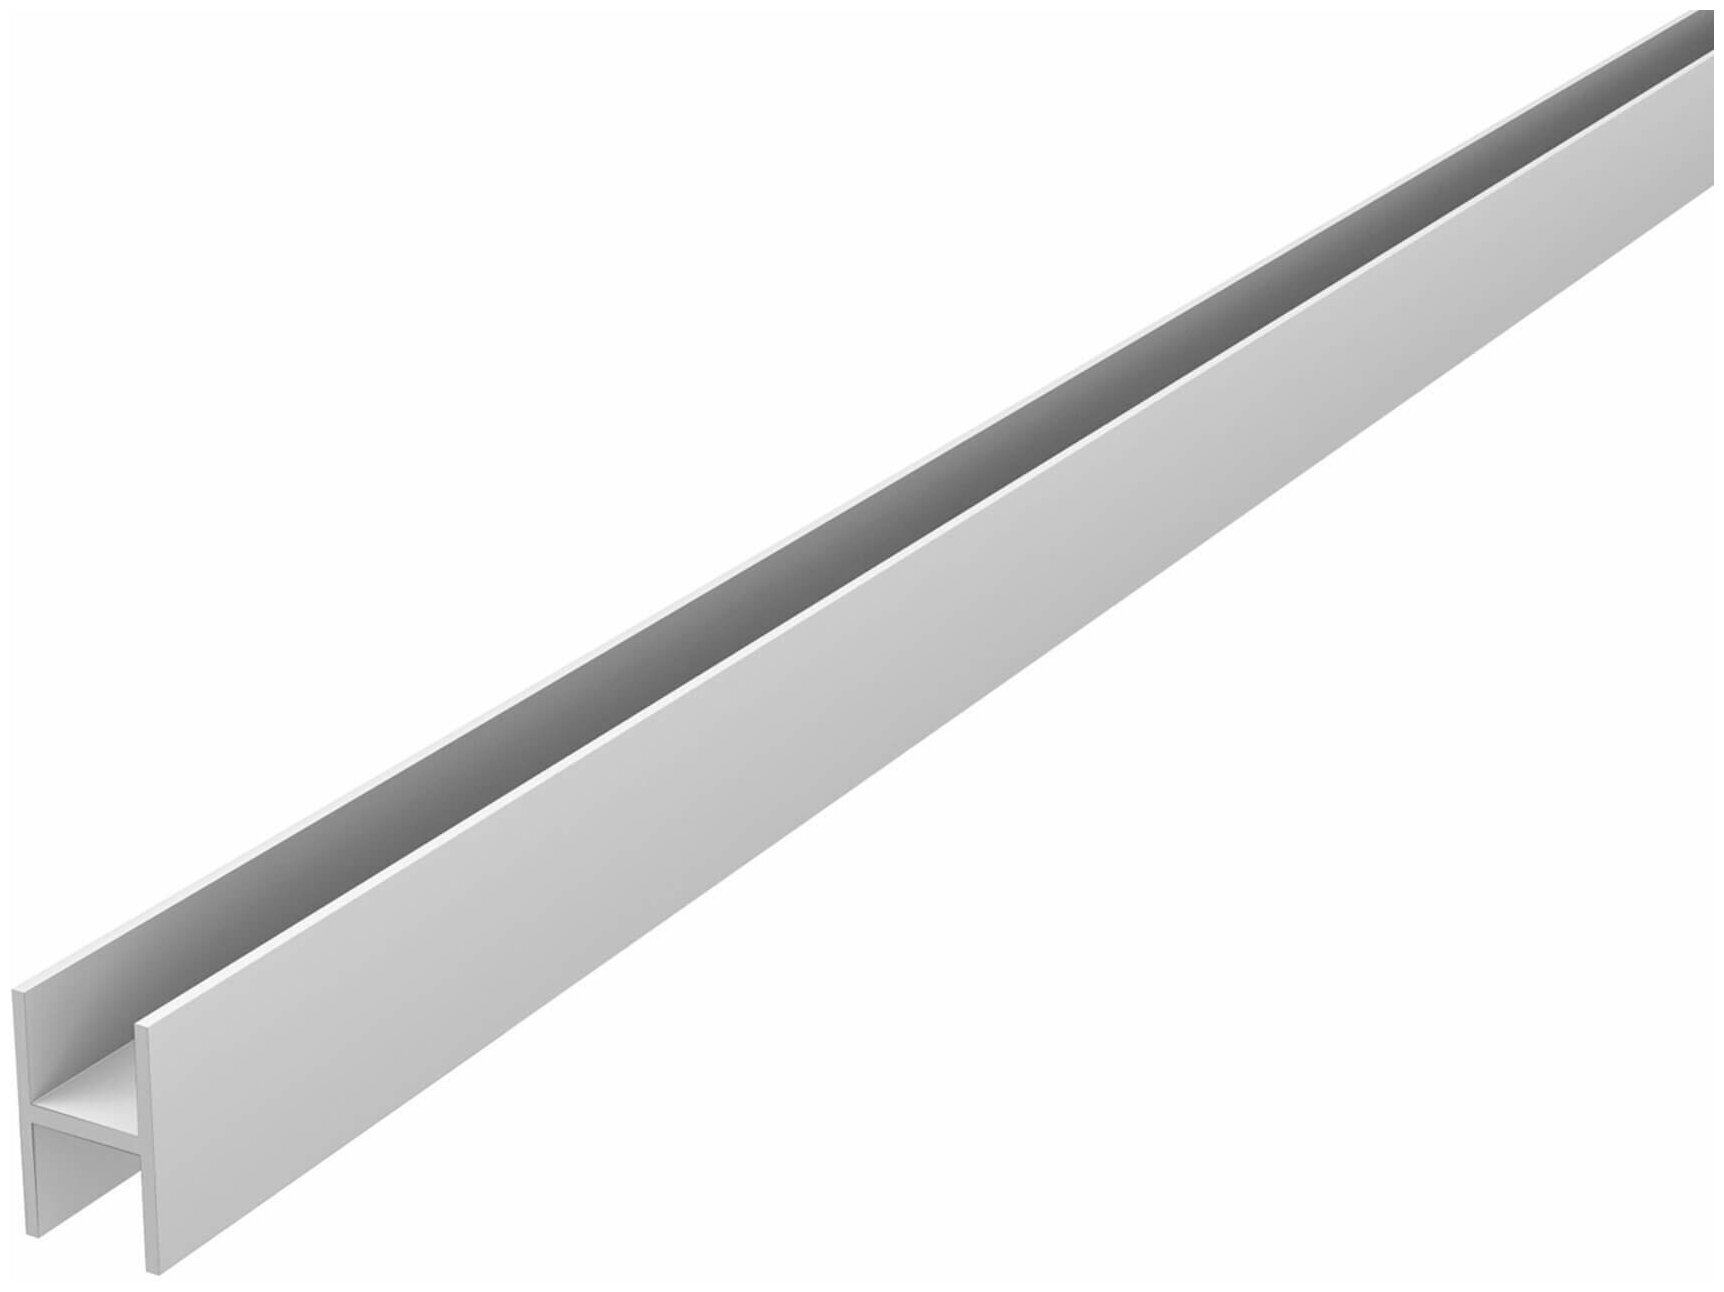 Планка алюминиевая для панелей соединительная 6мм-2шт. Профиль соединитель 600мм 2шт.